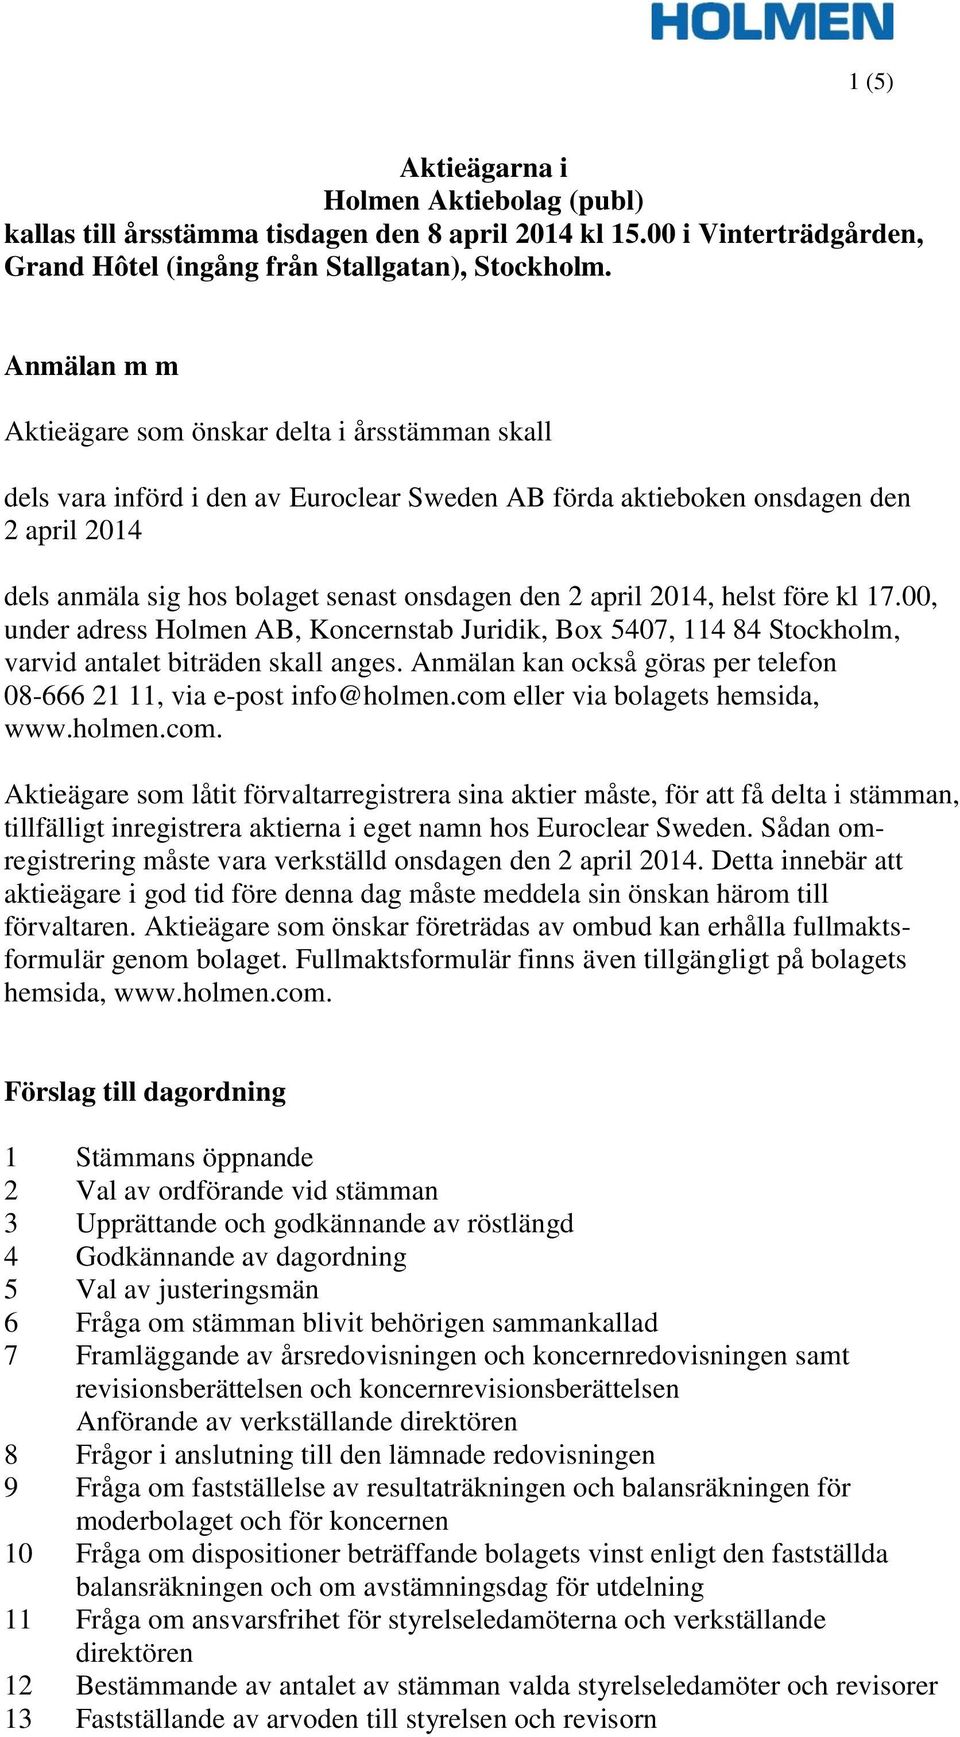 april 2014, helst före kl 17.00, under adress Holmen AB, Koncernstab Juridik, Box 5407, 114 84 Stockholm, varvid antalet biträden skall anges.